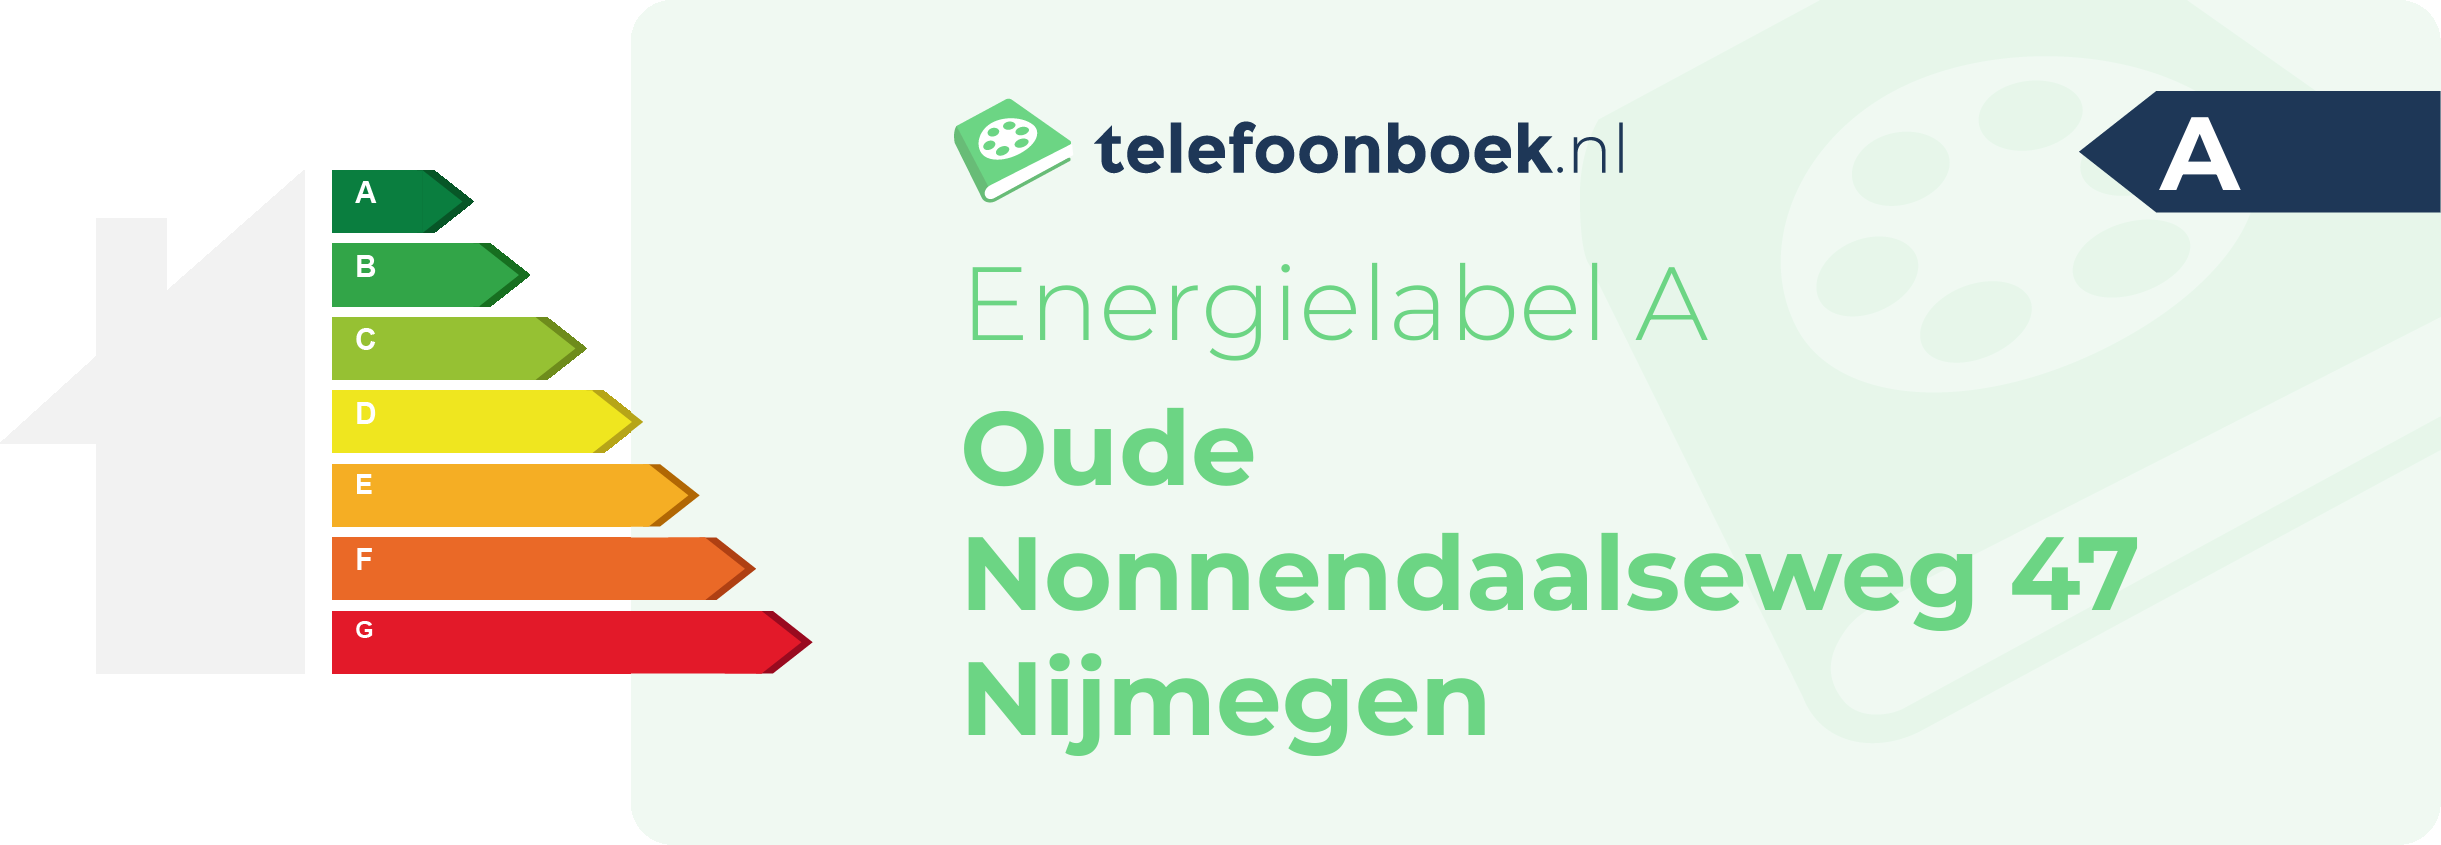 Energielabel Oude Nonnendaalseweg 47 Nijmegen